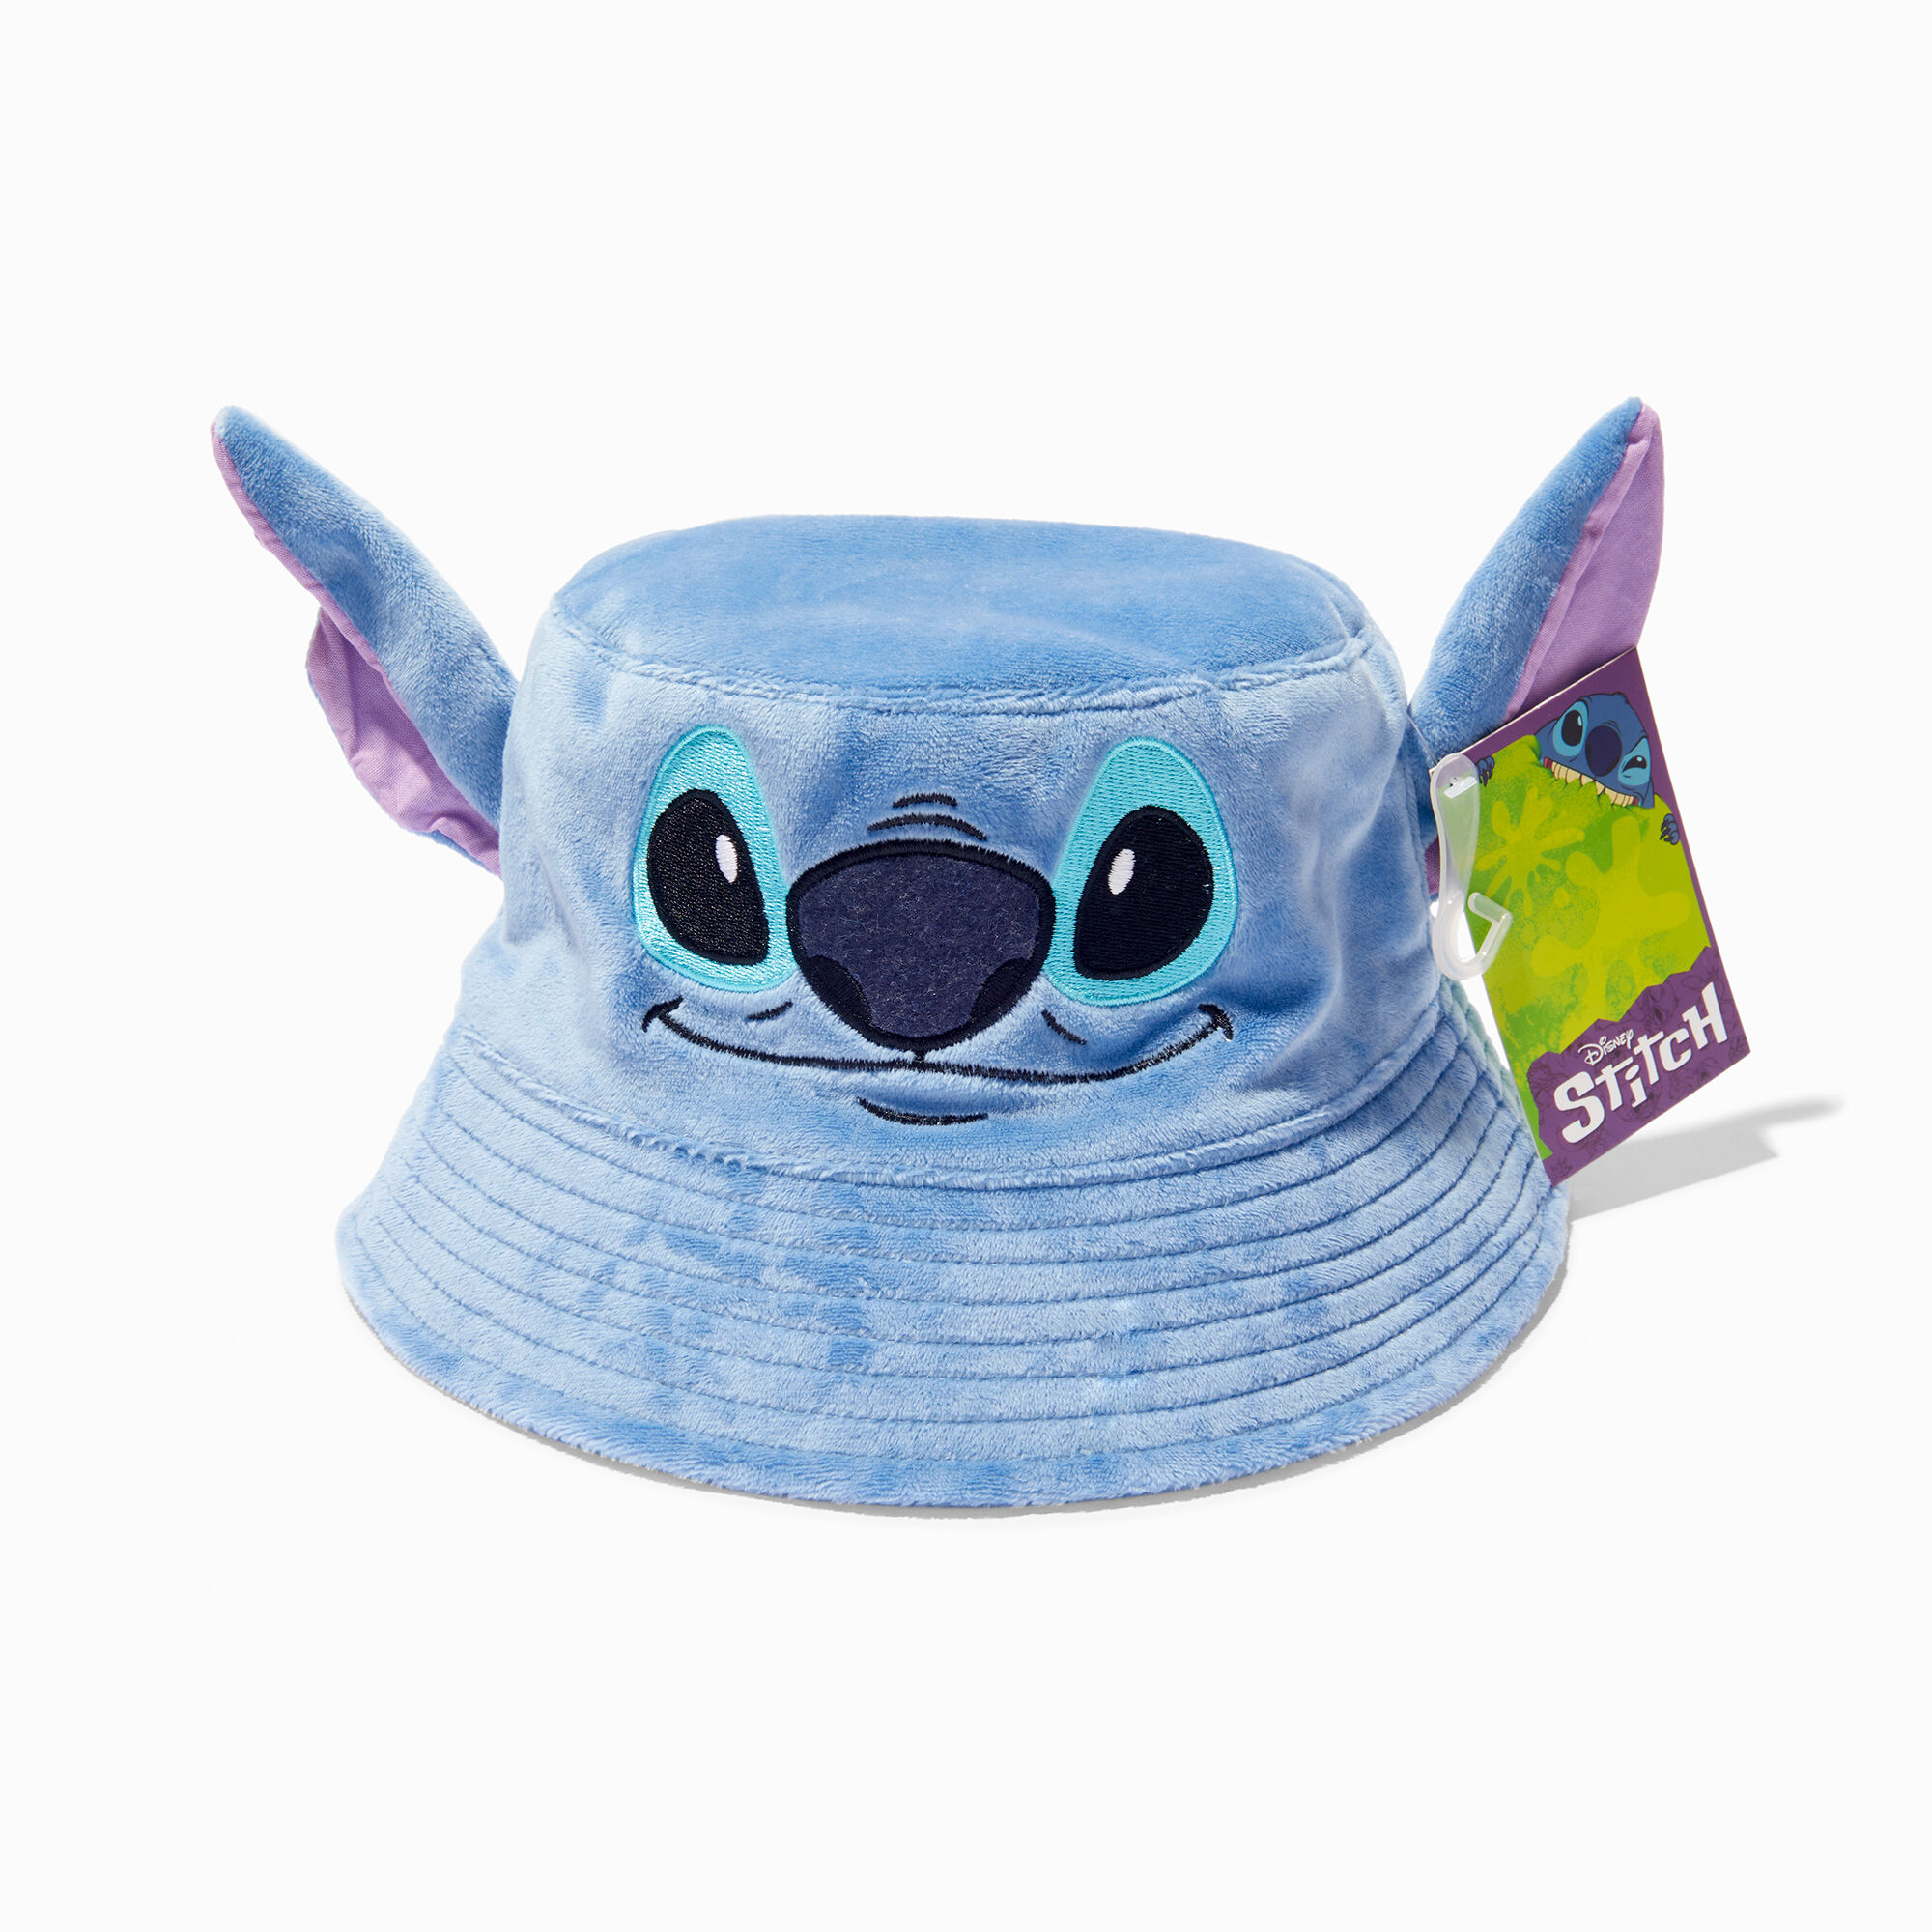 View Claires Disney Stitch 3D Bucket Hat information